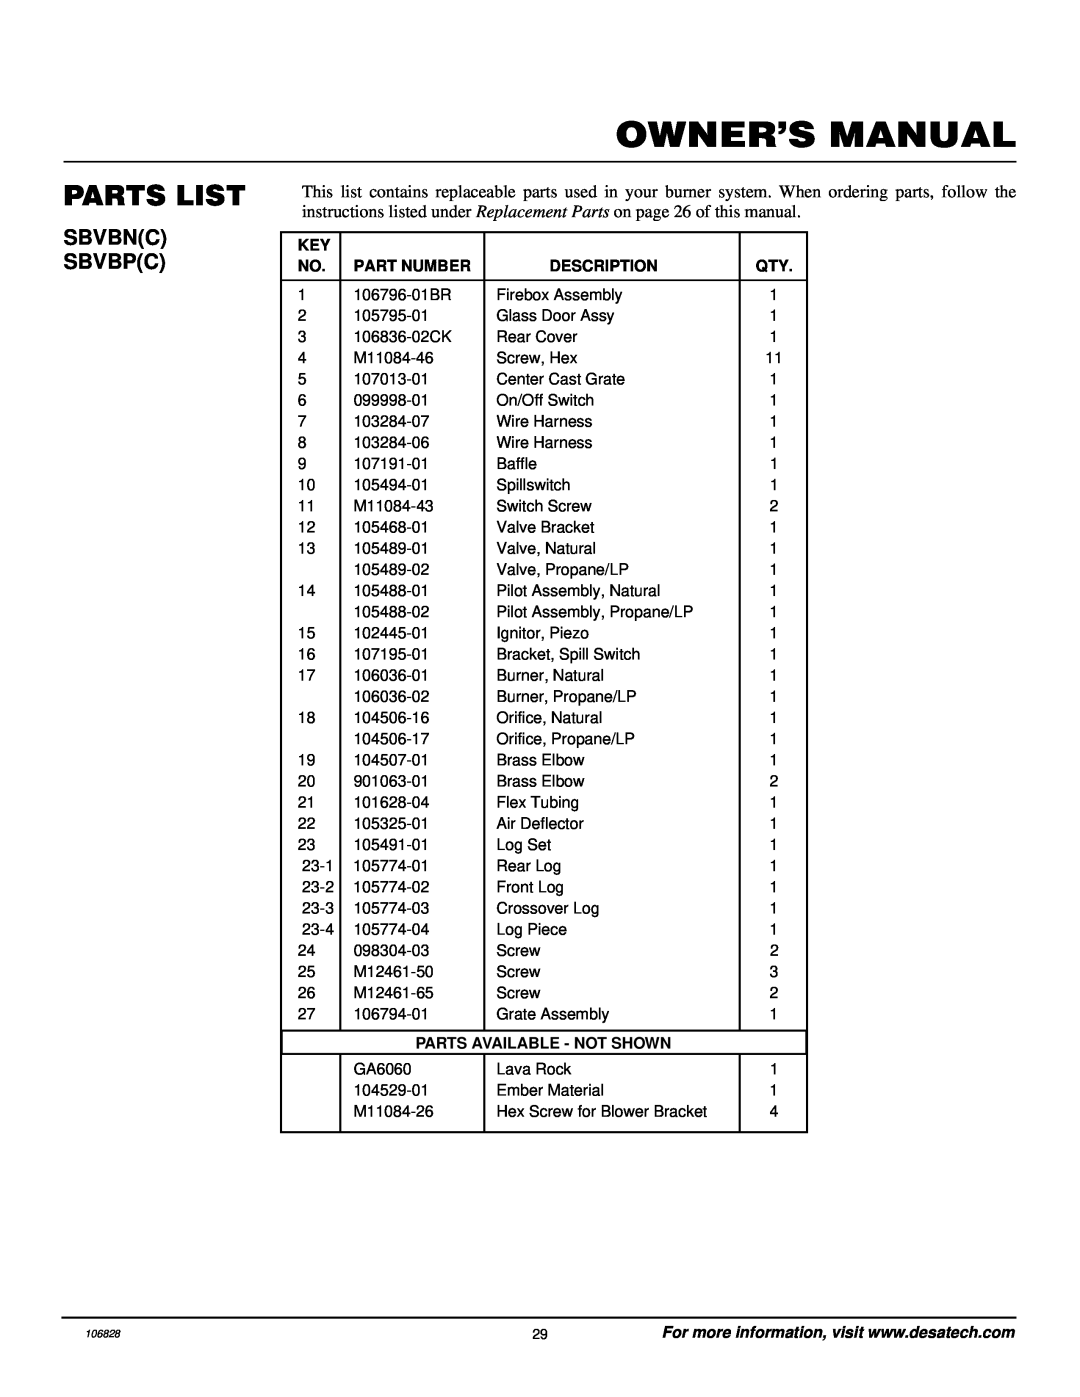 Vanguard Heating SBVBP(C) Parts List, Owner’S Manual, Sbvbnc Sbvbpc, Part Number, Description, Parts Available - Not Shown 